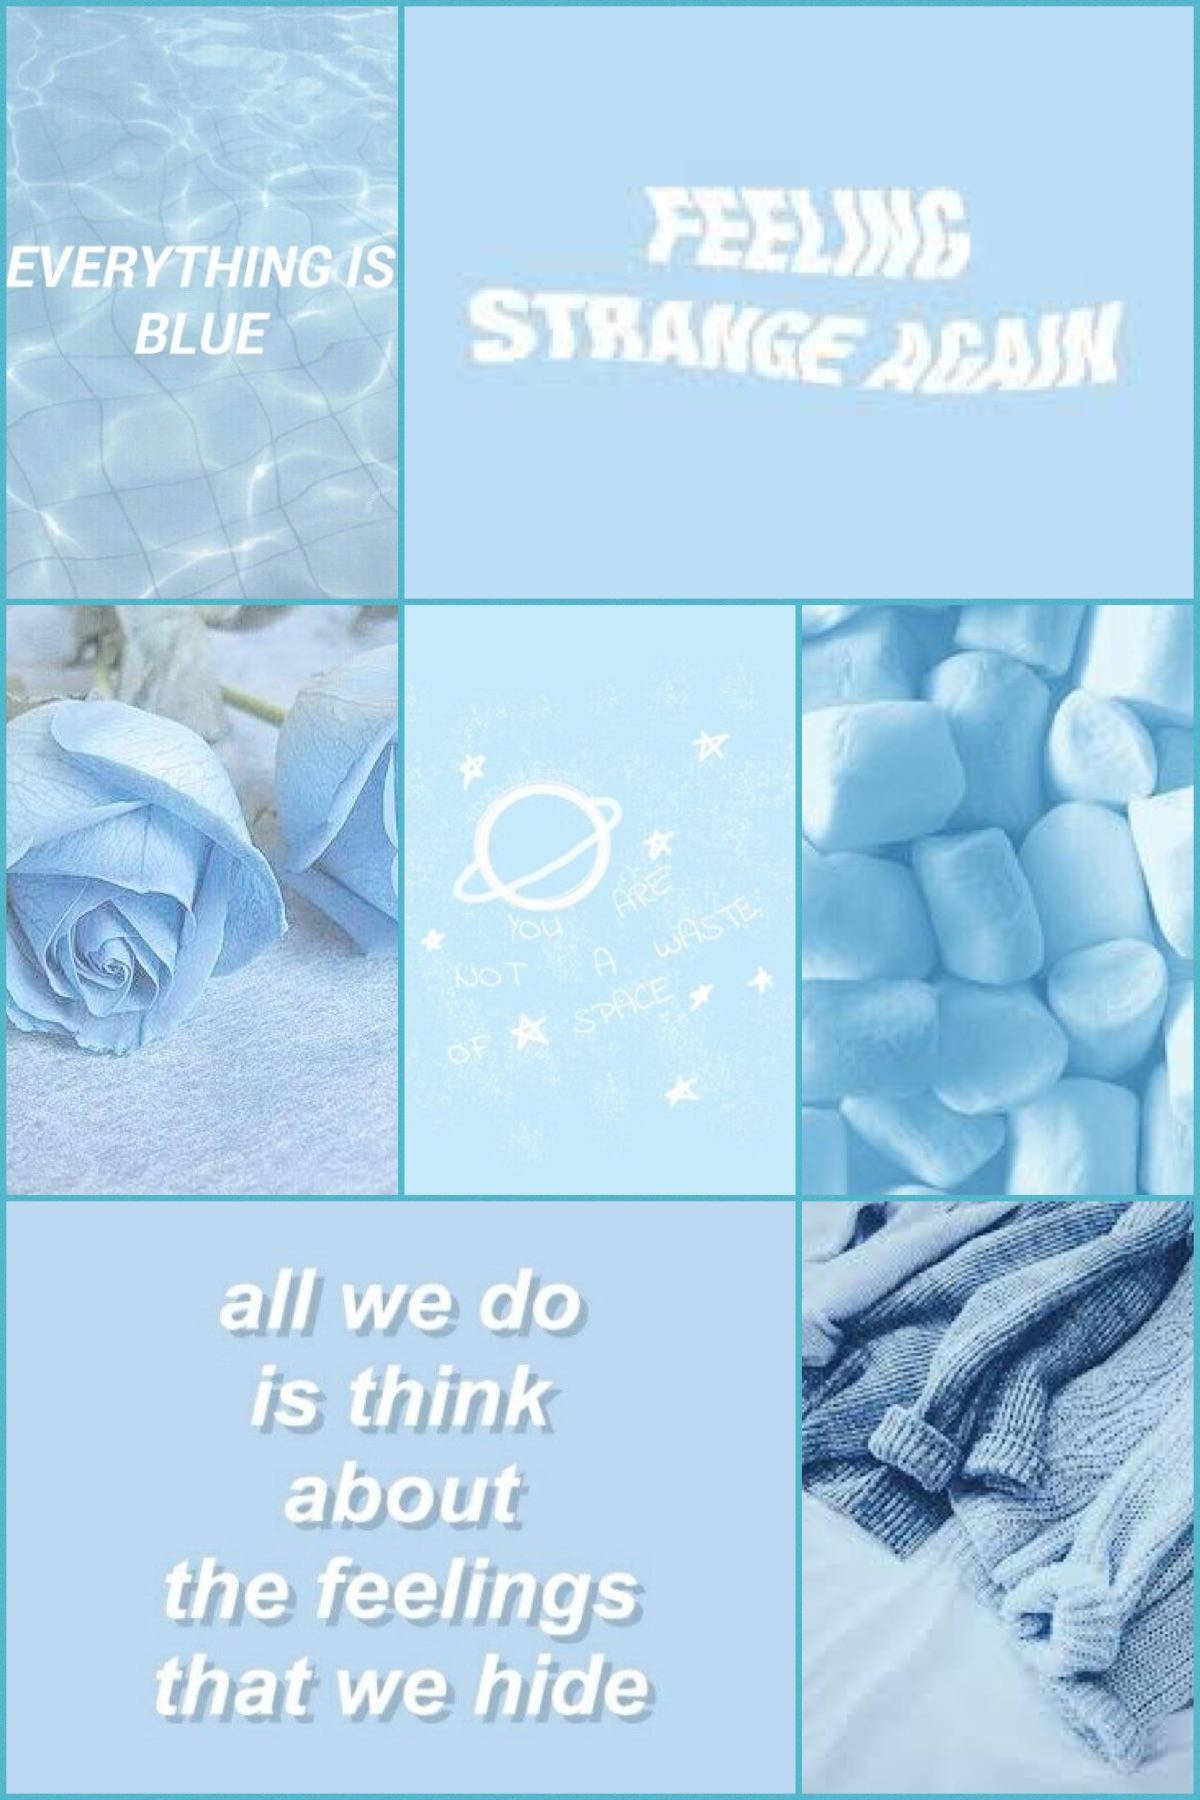 Ljusblåestetisk Iphone-collage. Wallpaper